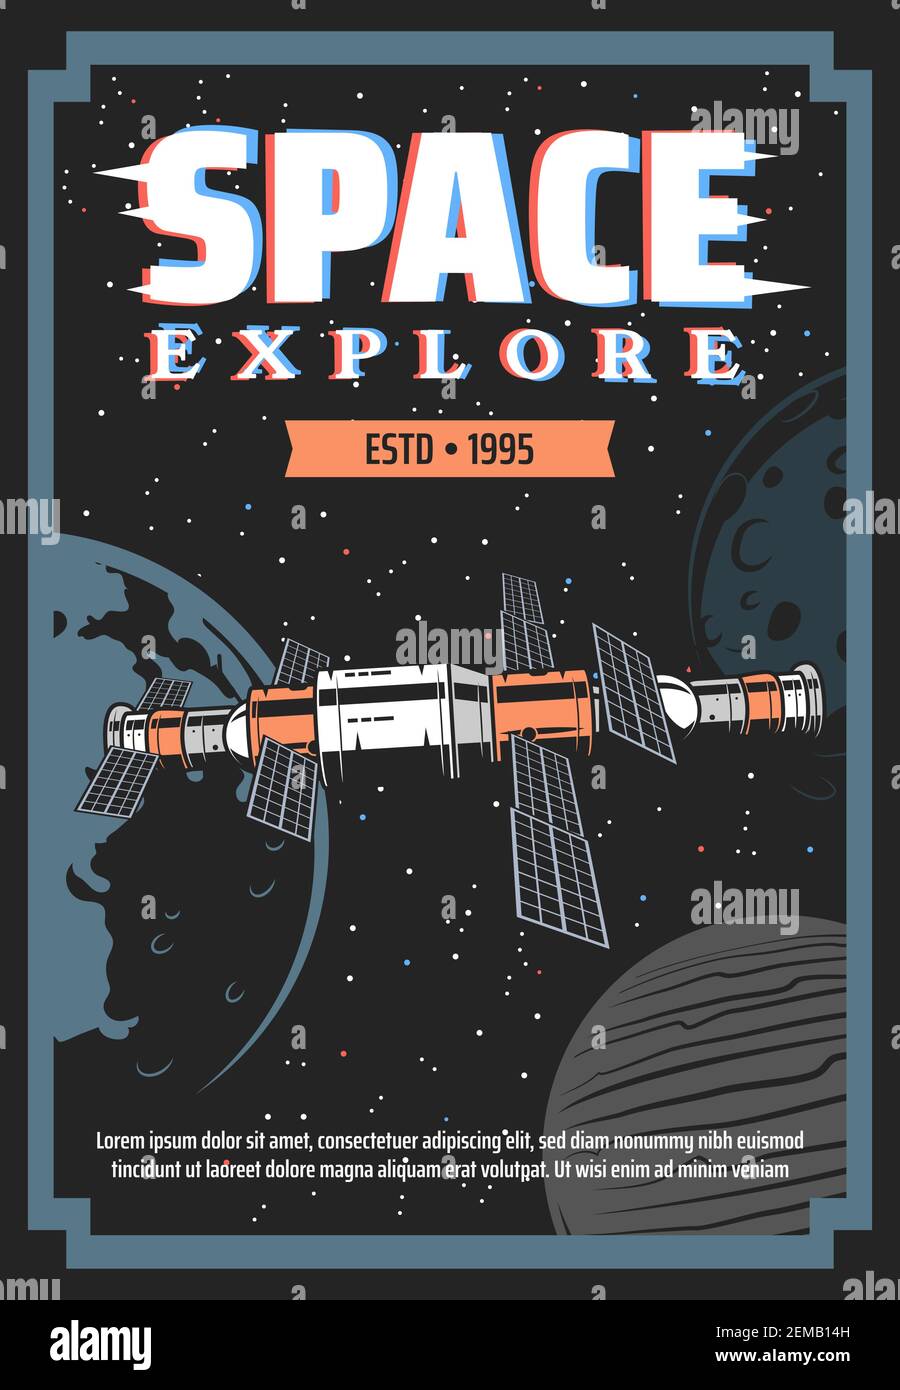 Poster retrò esplorazione spaziale con stazione spaziale vettoriale e pianeti galassici. Astronave, Terra, Luna, Giove, stelle e comete, stazione orbitale con sol Illustrazione Vettoriale